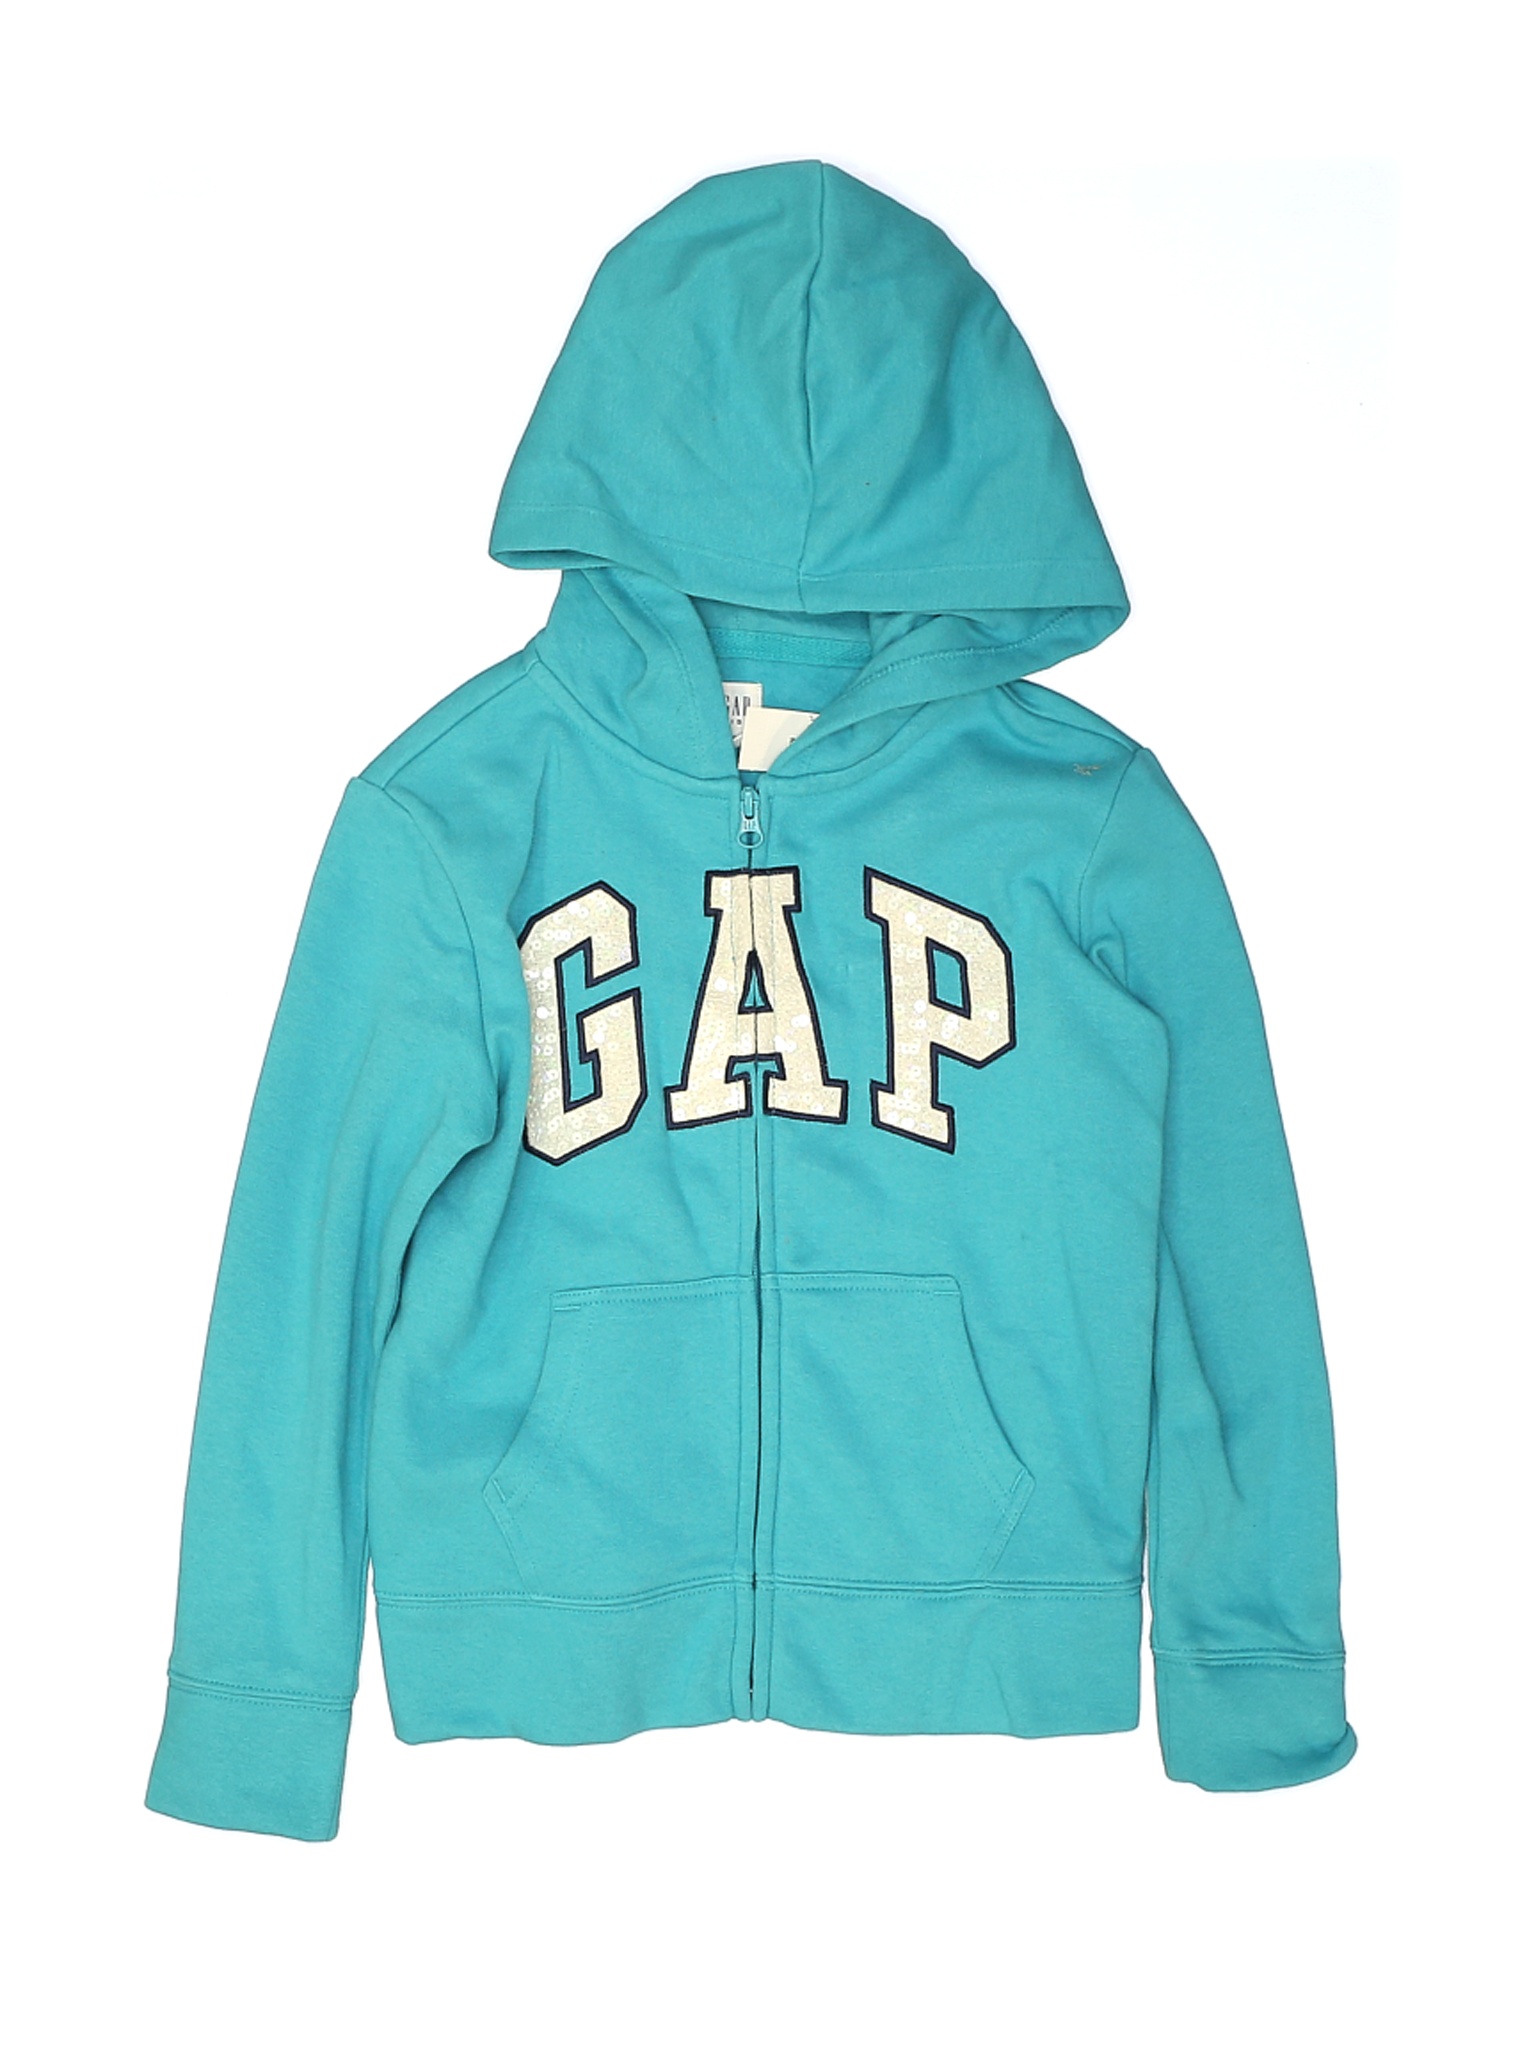 NWT Gap Kids Girls Blue Zip Up Hoodie 8 | eBay